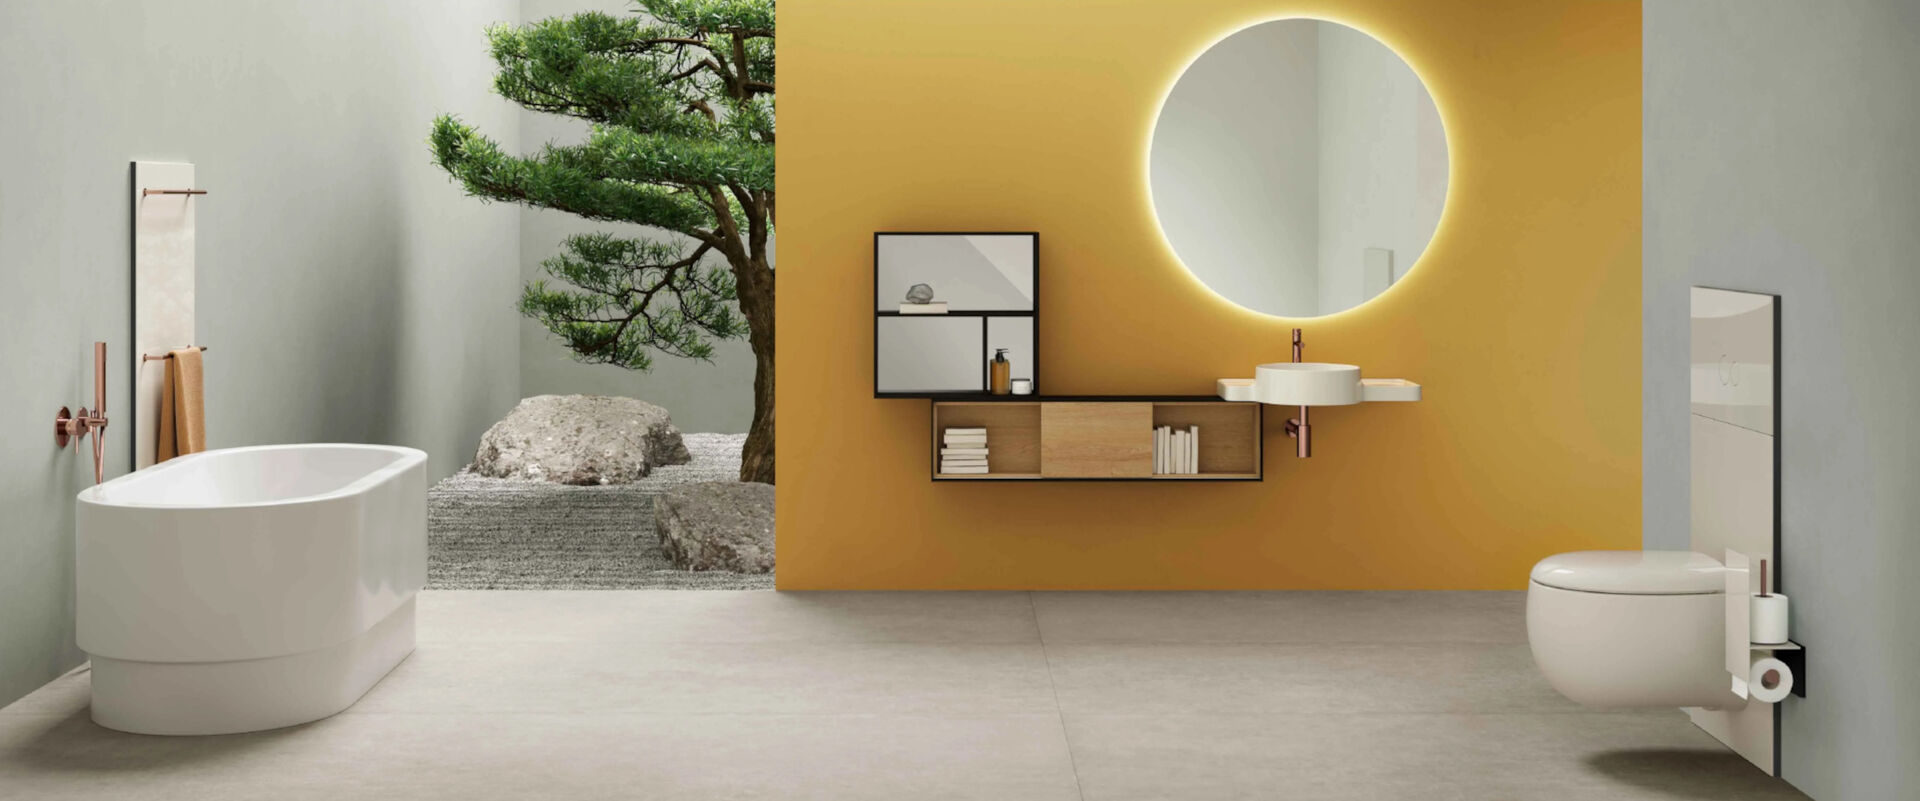 VitrA Voyage als Kombination aus vertikalen und horizontalen Möbeln in Kombination mit weißen Keramiken und einem großen runden Spiegel. 